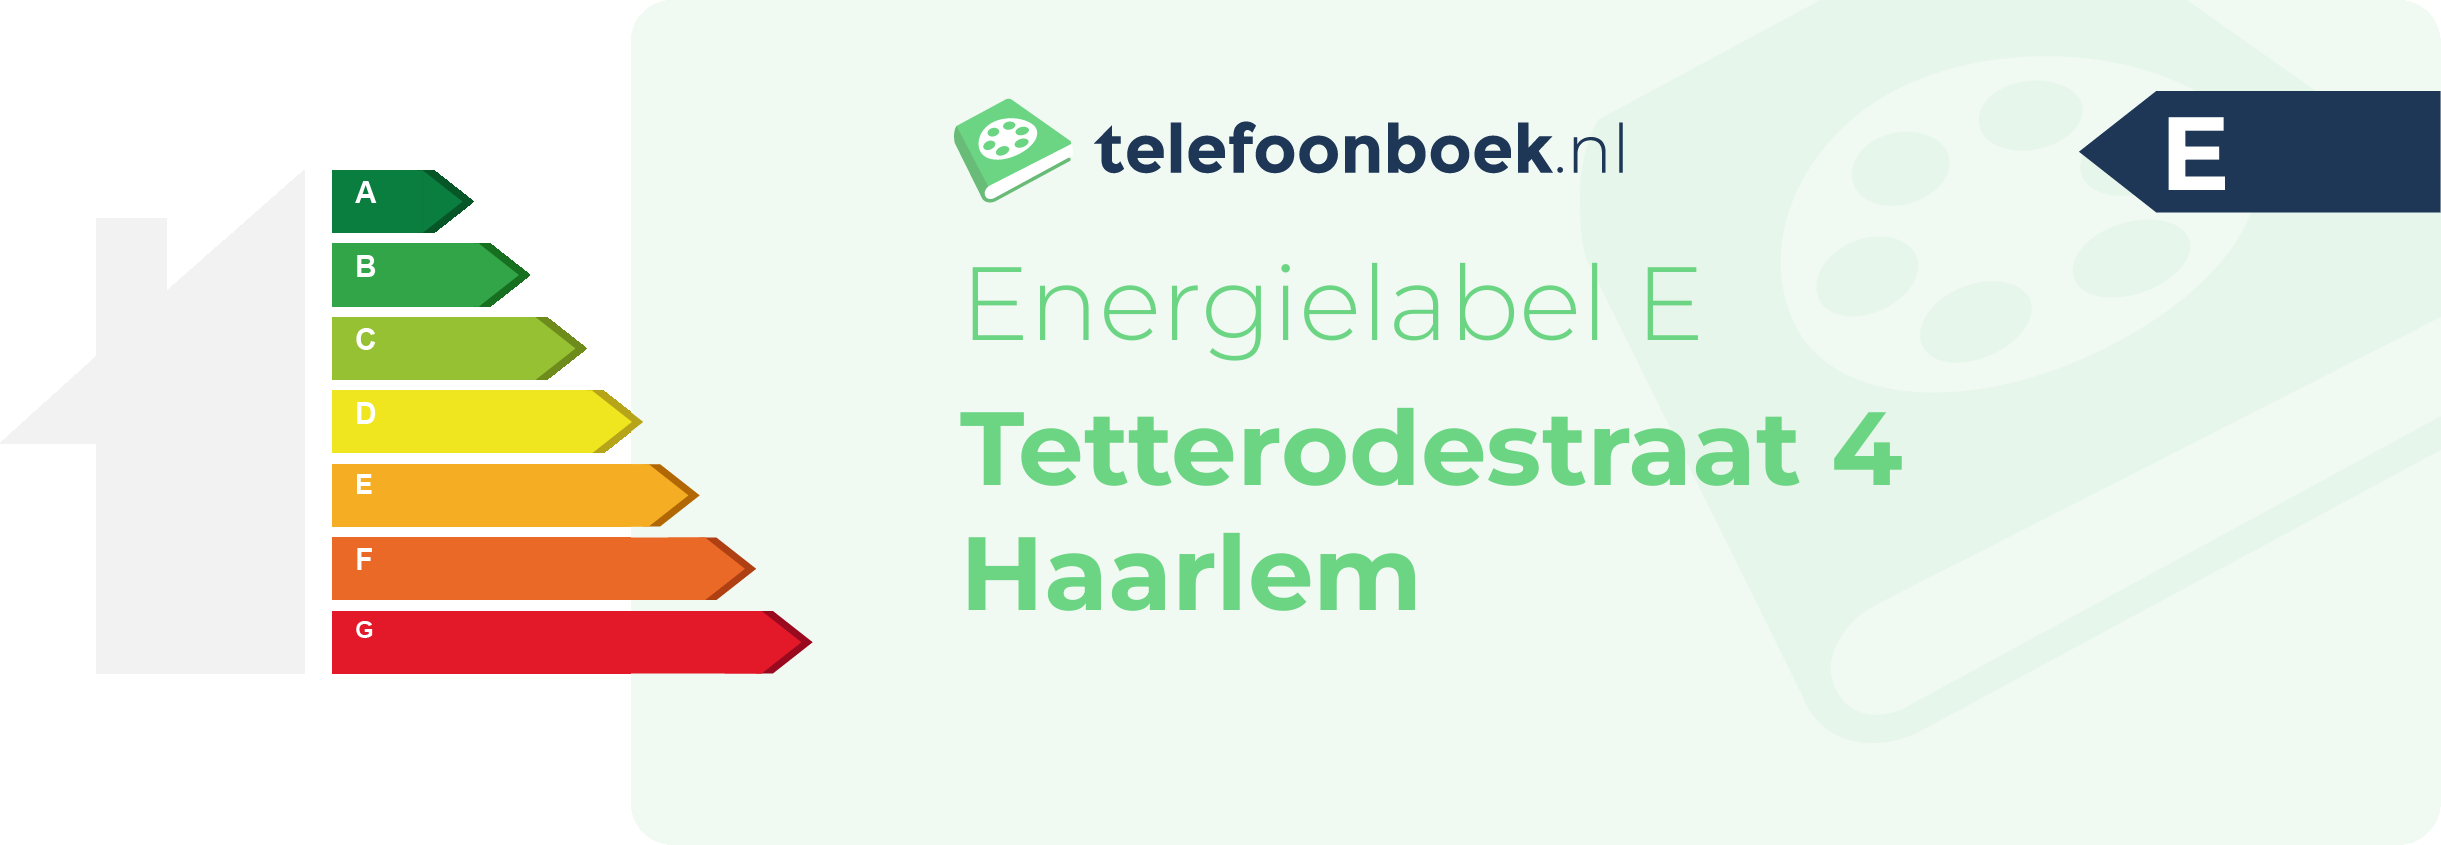 Energielabel Tetterodestraat 4 Haarlem